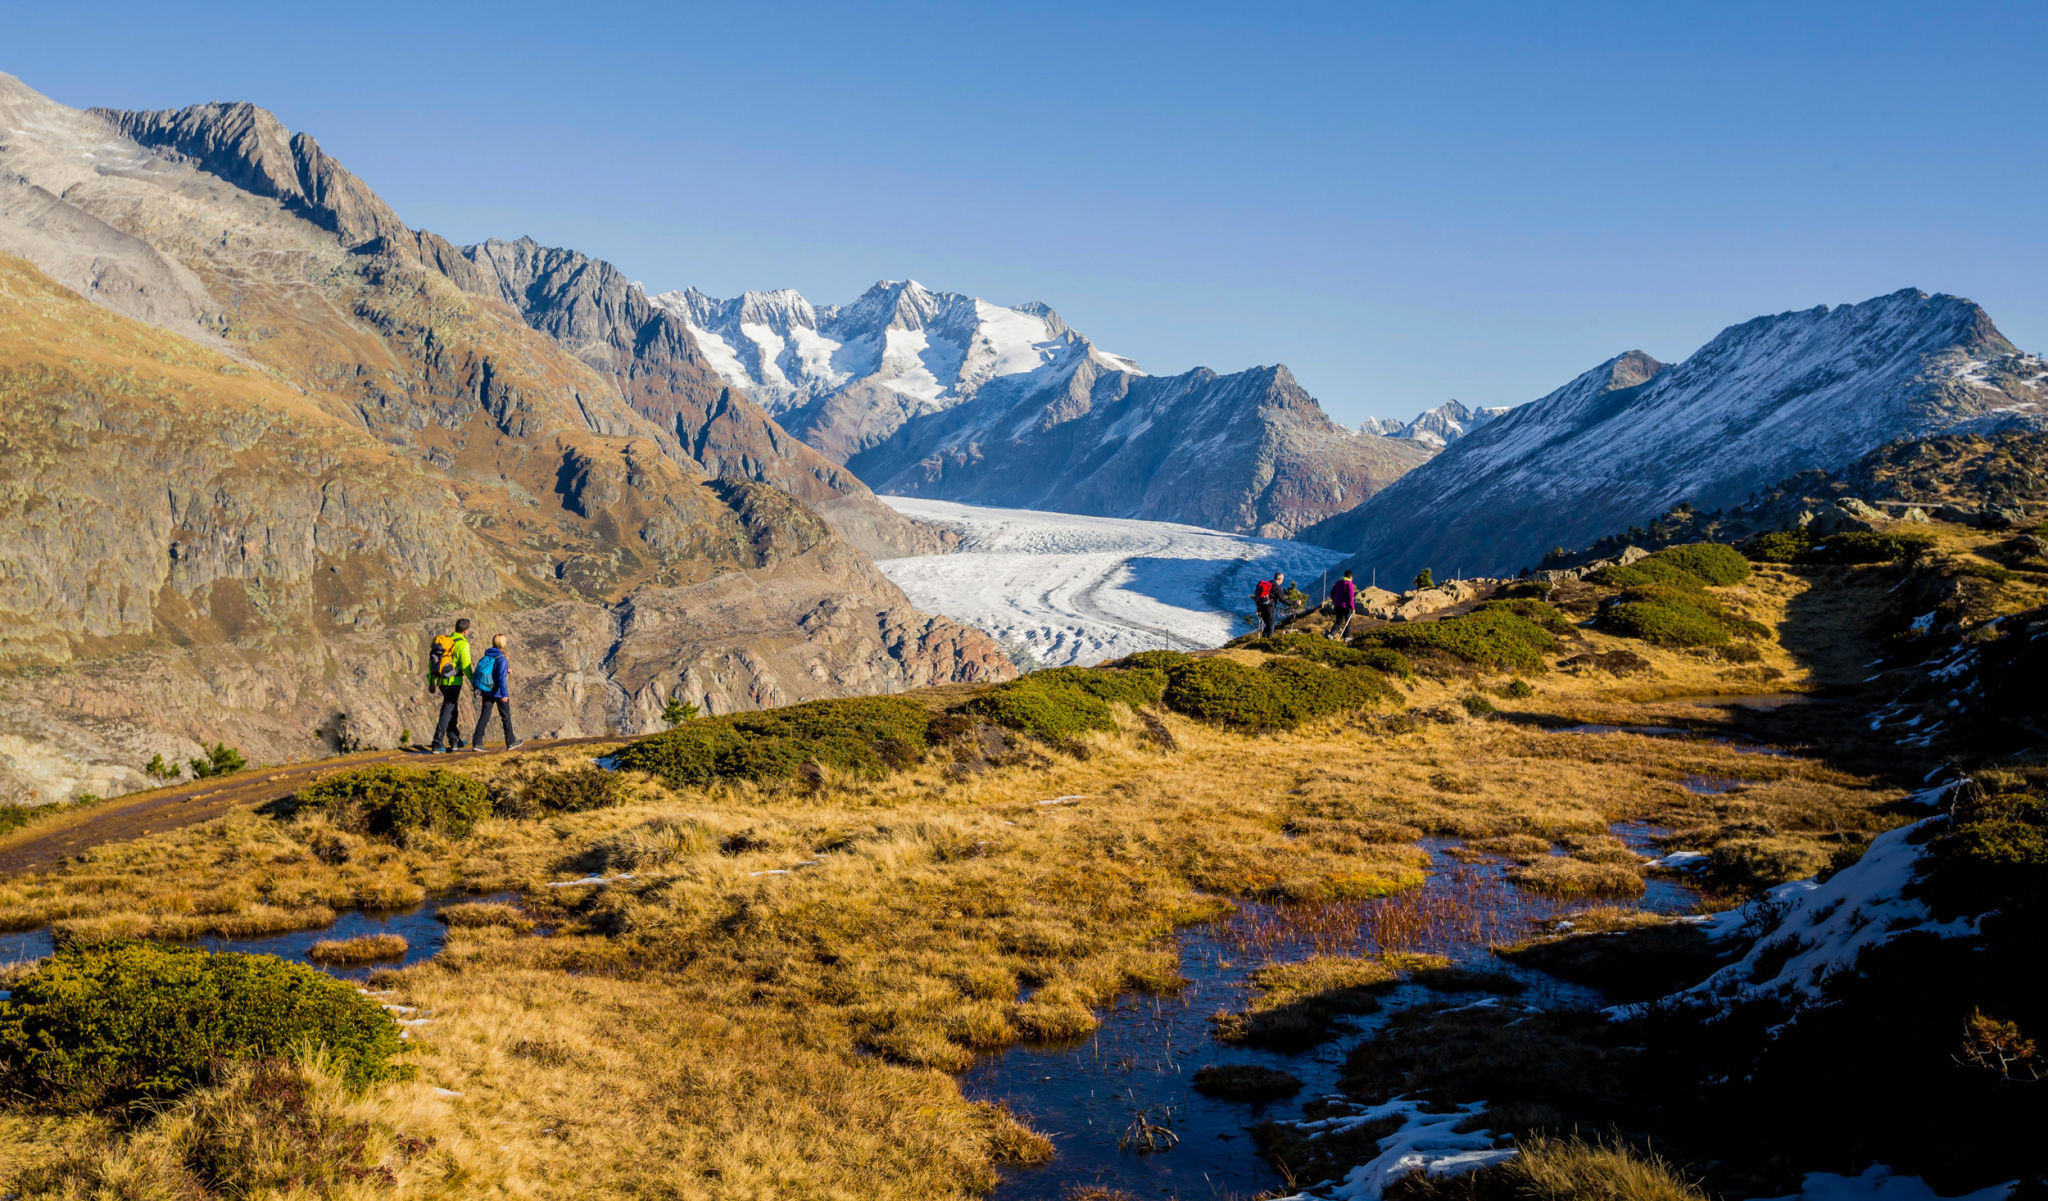 Les gens font des randonnées vers le glacier d'Aletsch, la vue est magnifique encore plus en automne avec les belles couleurs.
Valais, Suisse.